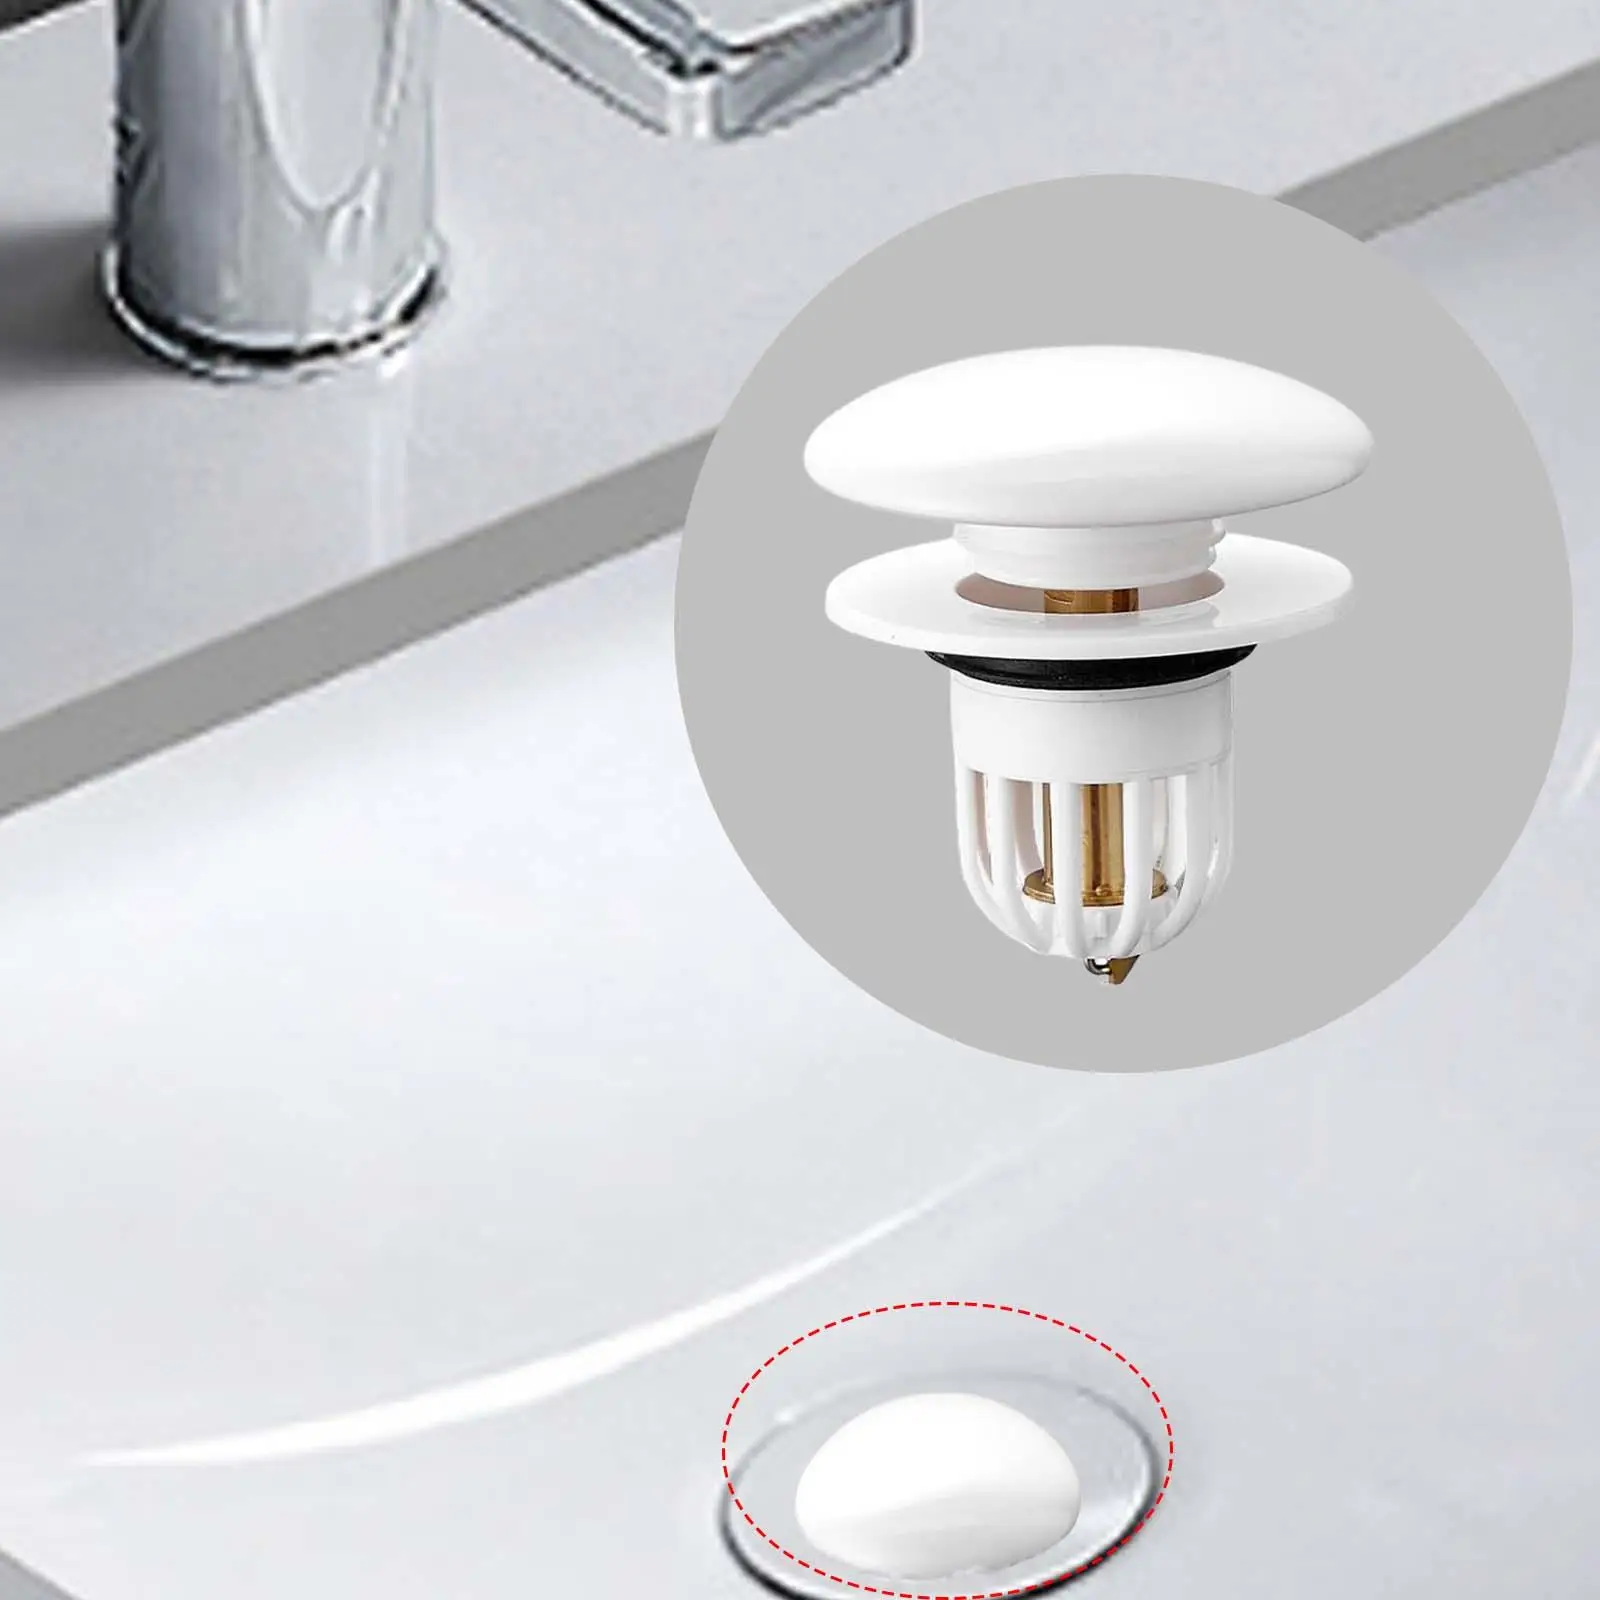 Push Type Basin Bound Drain Filter Sink Drain Filter Basin Sink Drain Strainer for Bathroom Household Kitchen Washroom Hotel